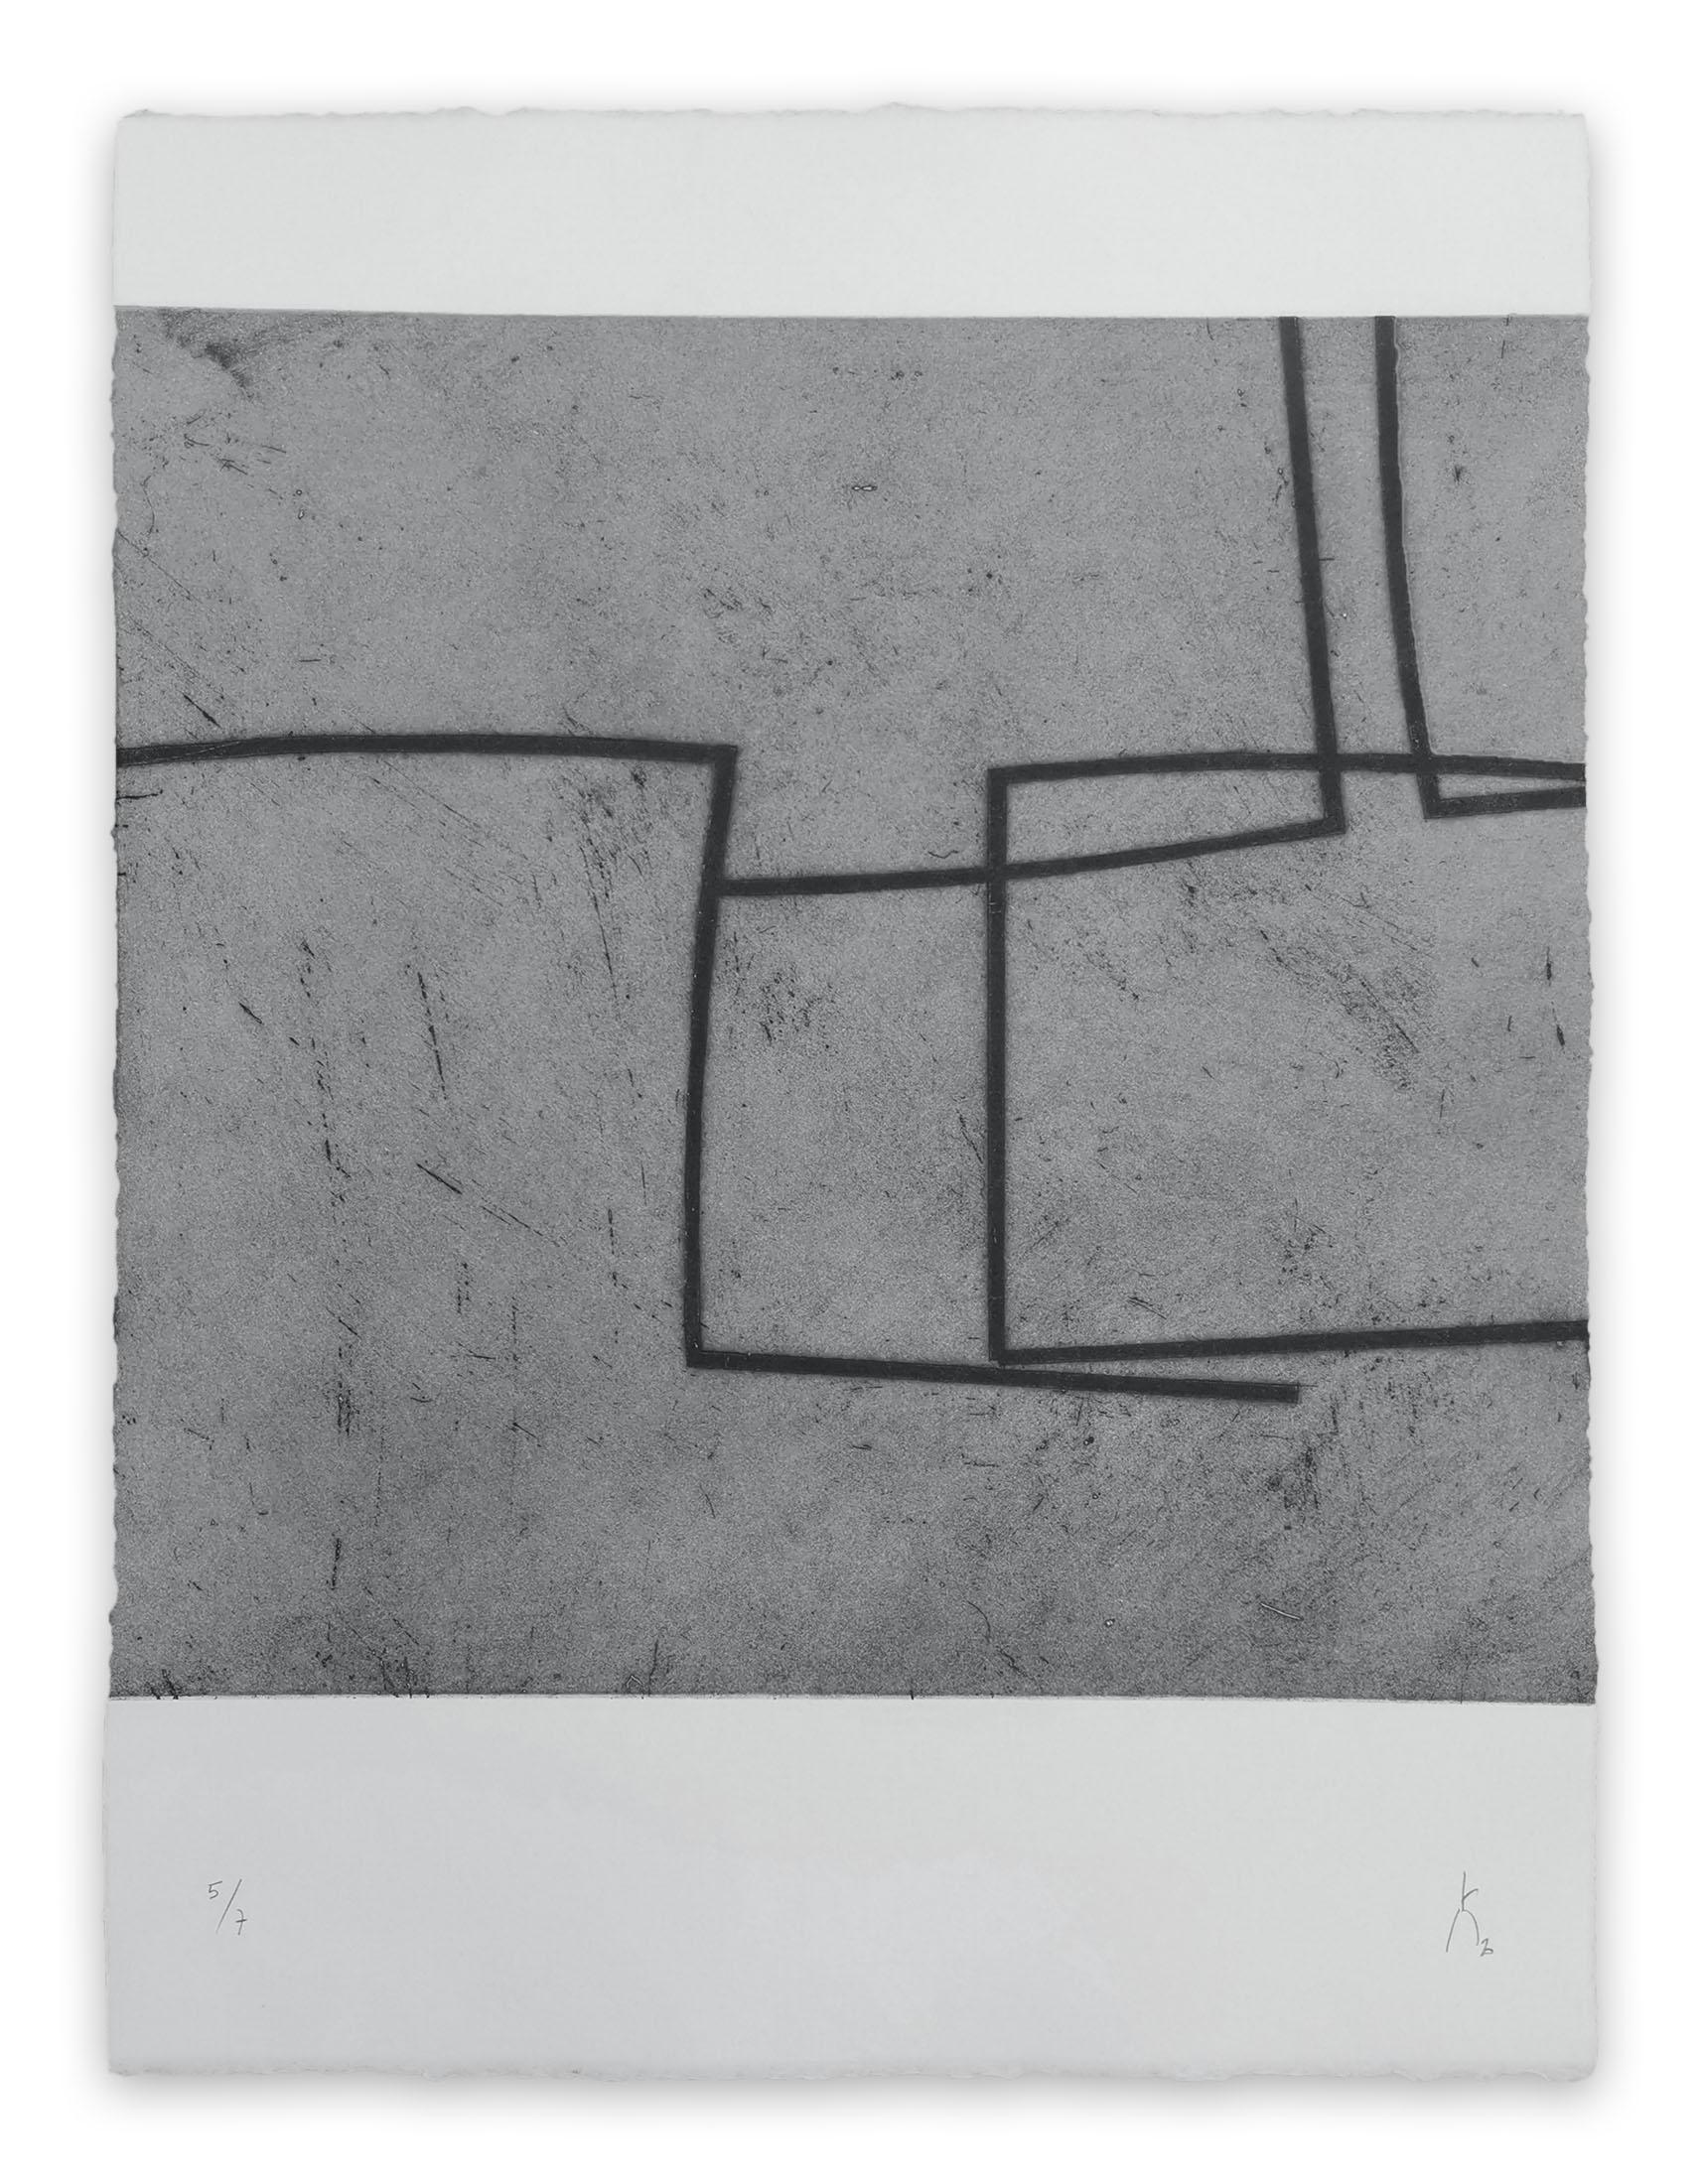 Pierre Muckensturm Abstract Print - 203R0945